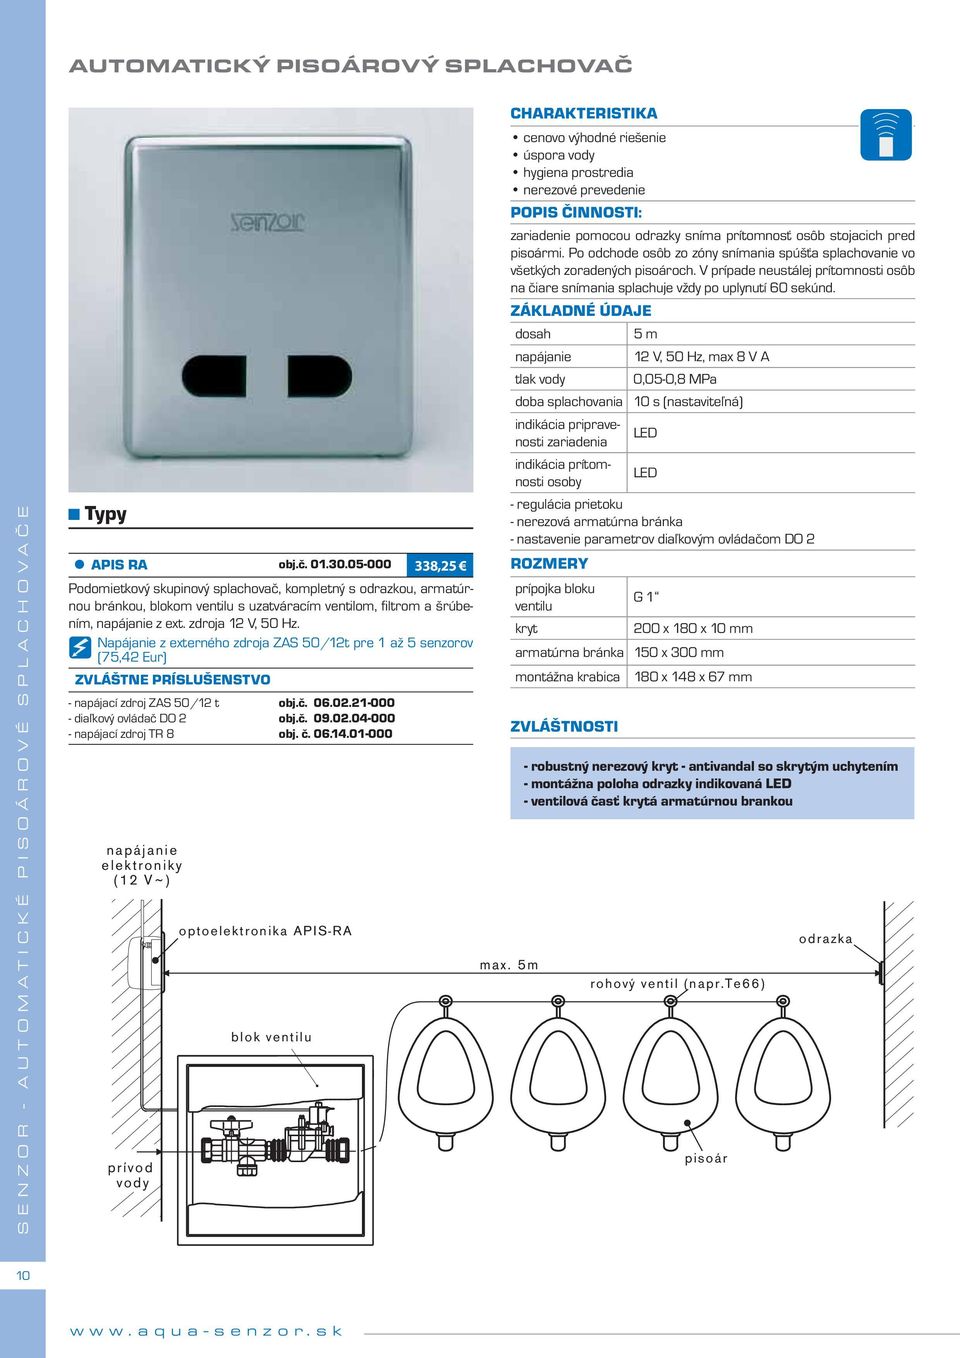 Napájanie z externého zdroja ZAS 50/12t pre 1 až 5 senzorov - napájací zdroj ZAS 50/12 t - diaľkový ovládač DO 2 - napájací zdroj TR 8 napájanie elektroniky (12 V ~ ) prívod vody optoelektronika